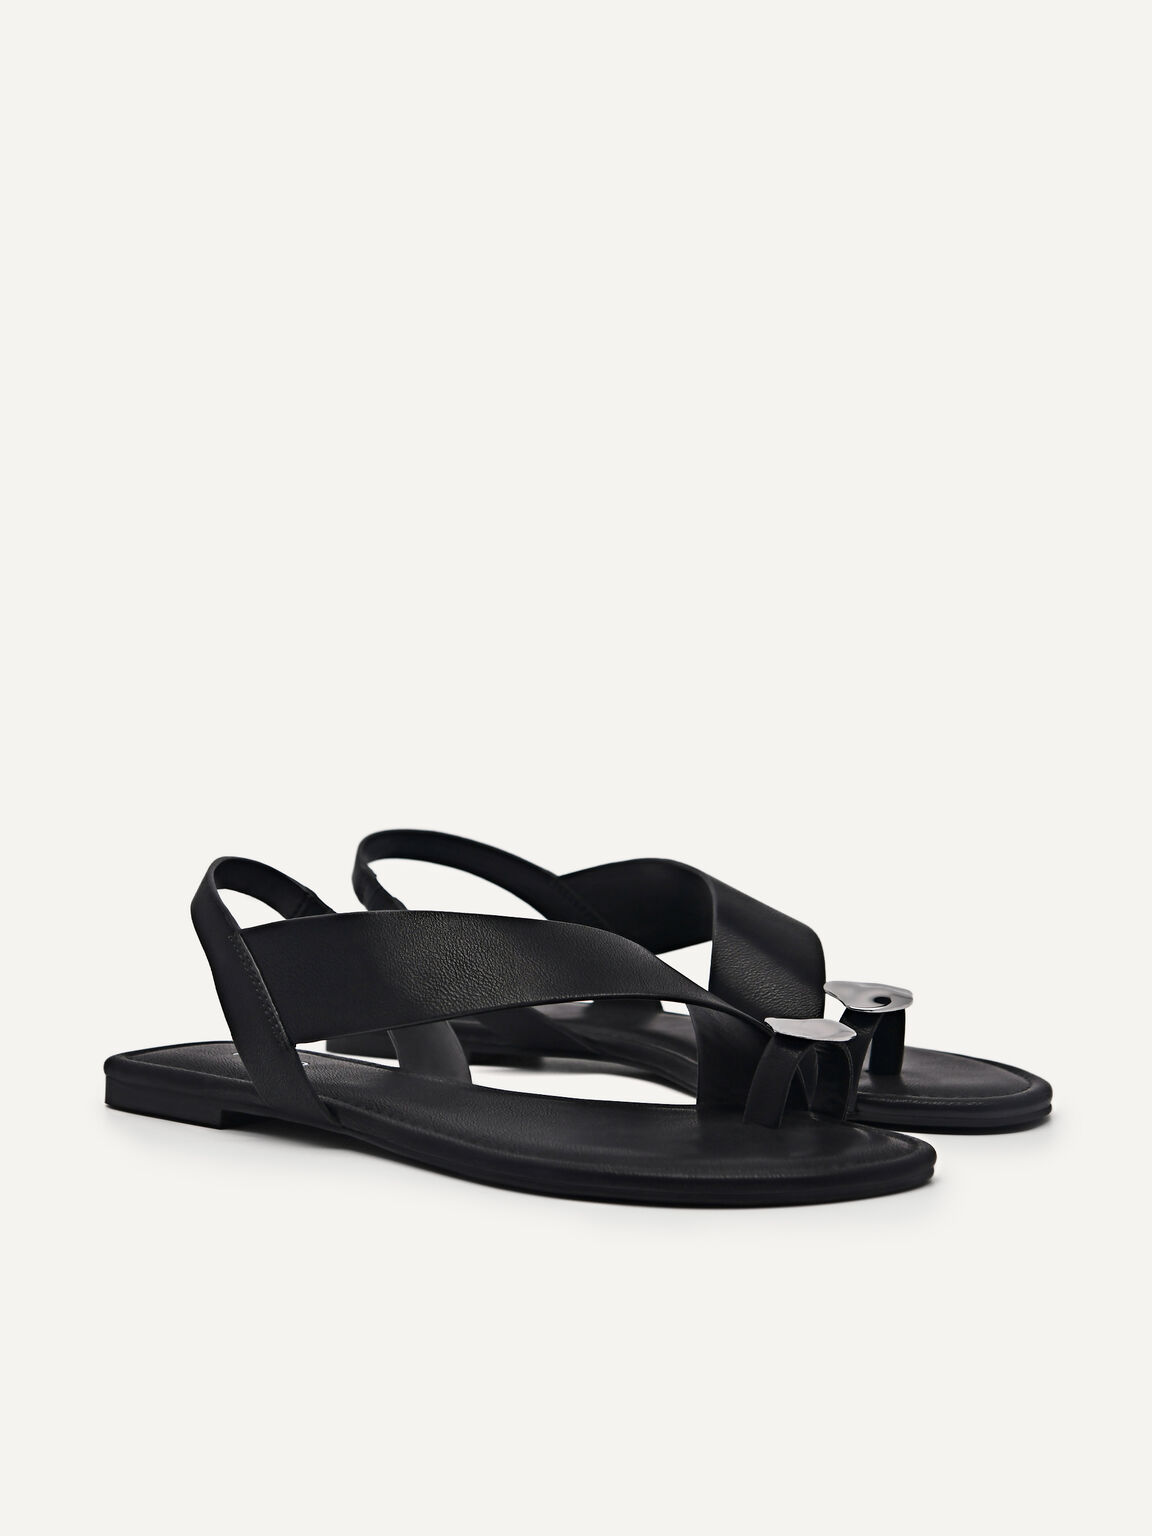 Alexis Toe Loop Sandals, Black, hi-res